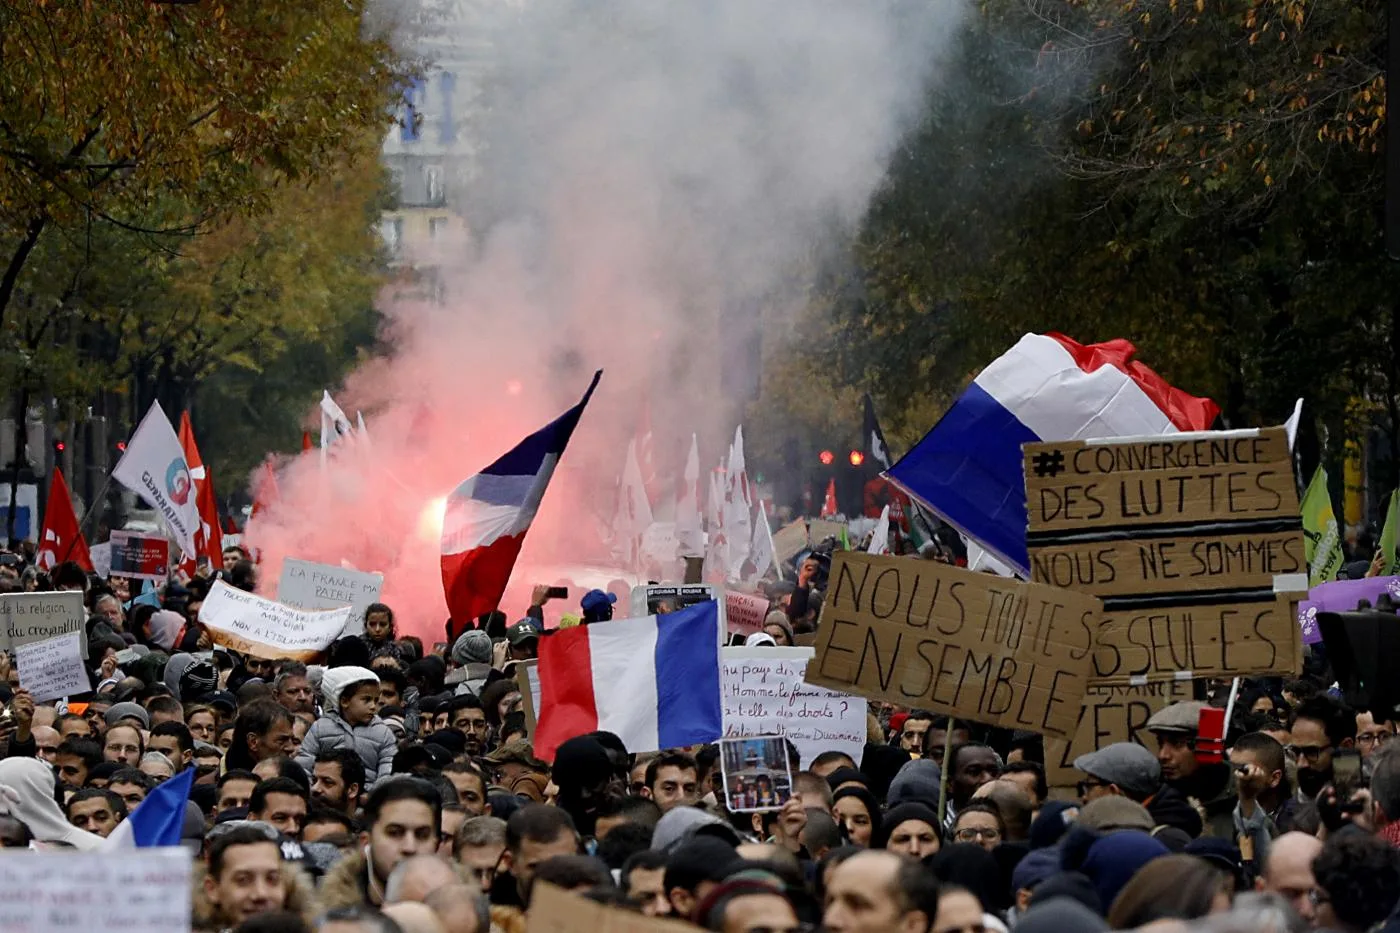 متظاهرون يلوحون بالأعلام الفرنسية وهم يسيرون بالقرب من محطة الشمال في باريس احتجاجا على الإسلاموفوبيا، في العاشر من تشرين الثاني/ نوفمبر 2019.